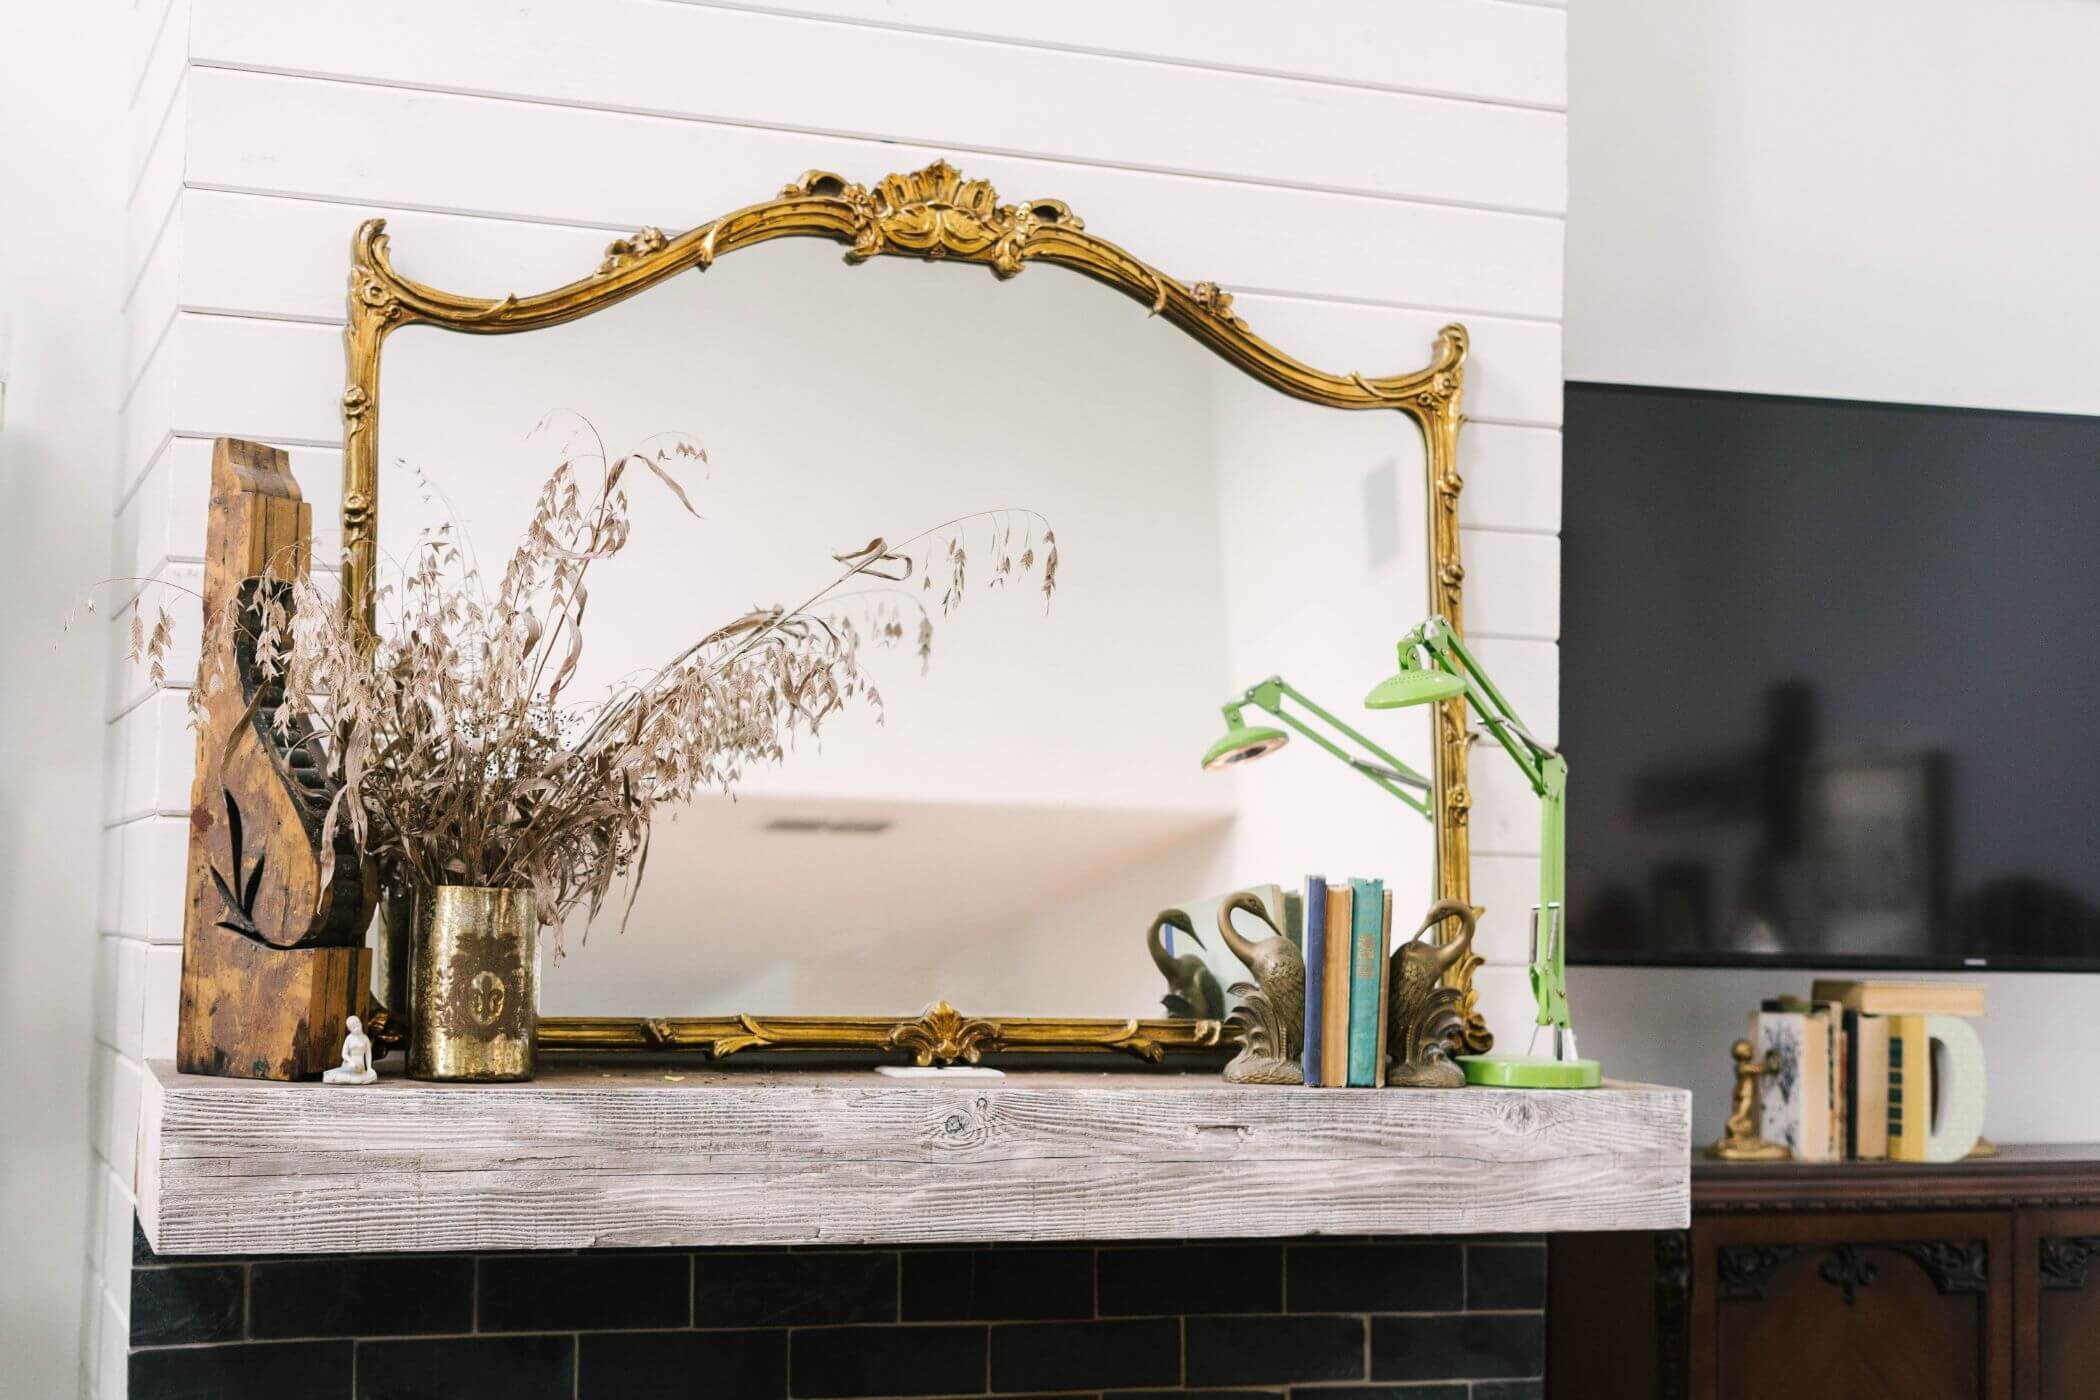 艺术现代农舍-复古装饰客厅-黑砖壁炉镜。jpg